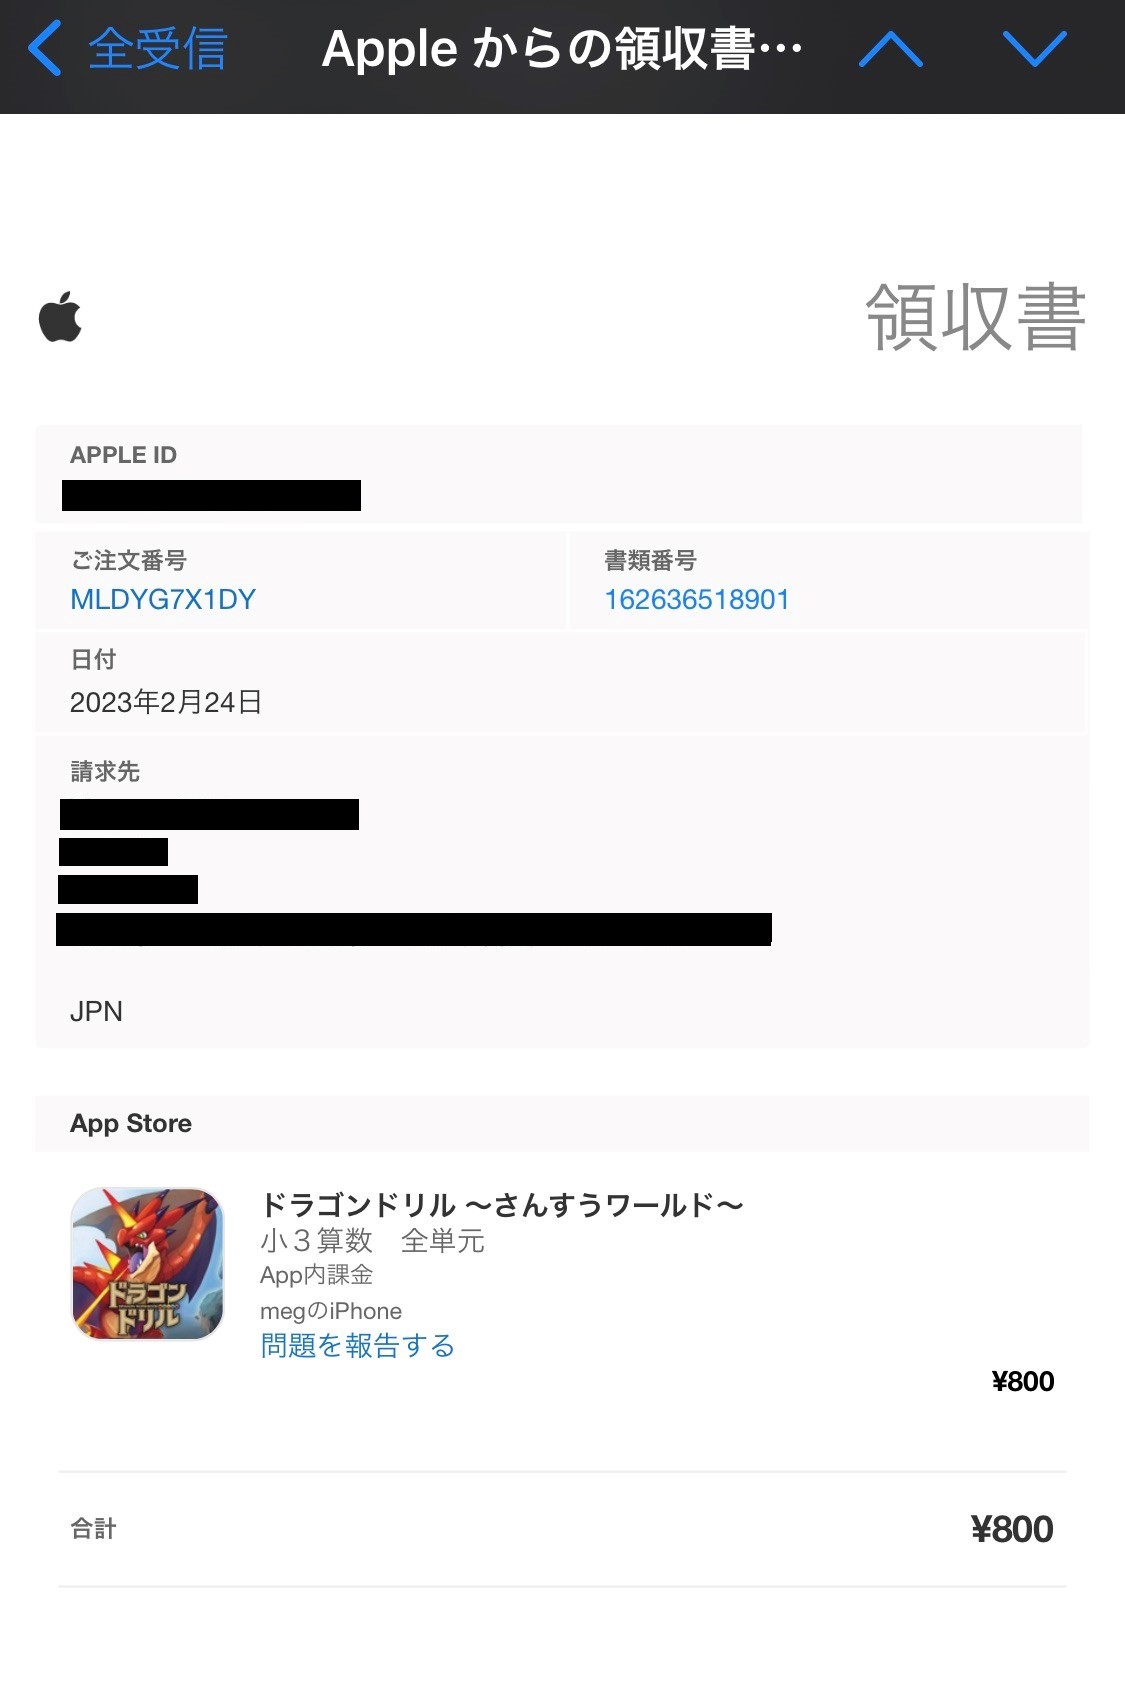 「Appleからの領収書」画像